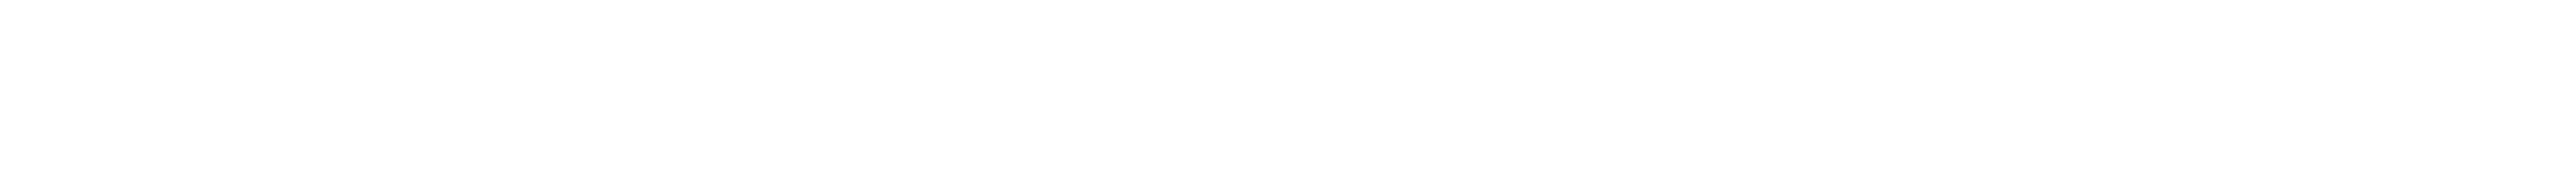 logo centro cultural